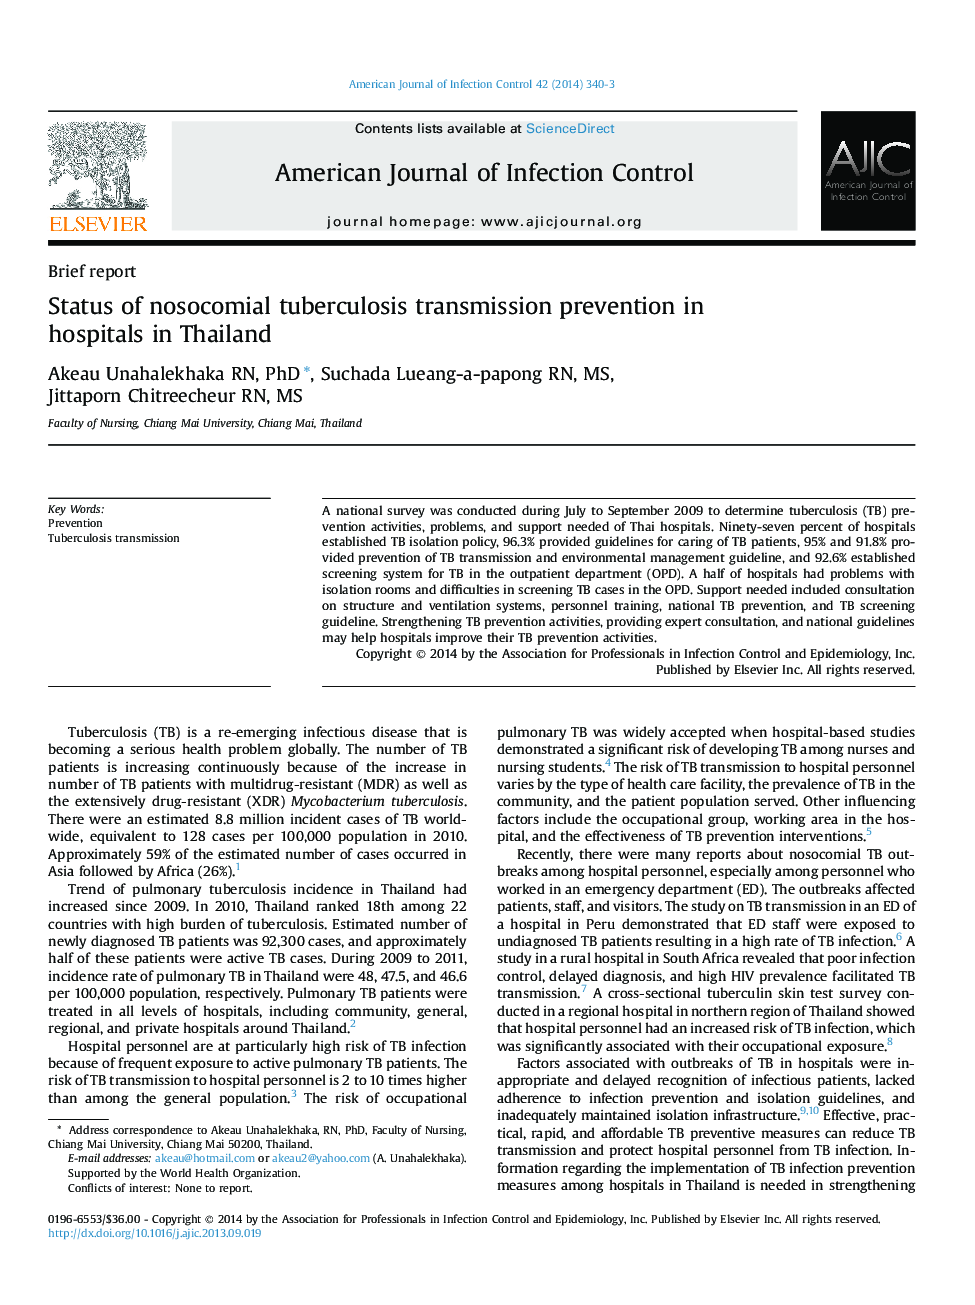 وضعیت پیشگیری از انتقال سل ریوی در بیمارستان های تایلند 